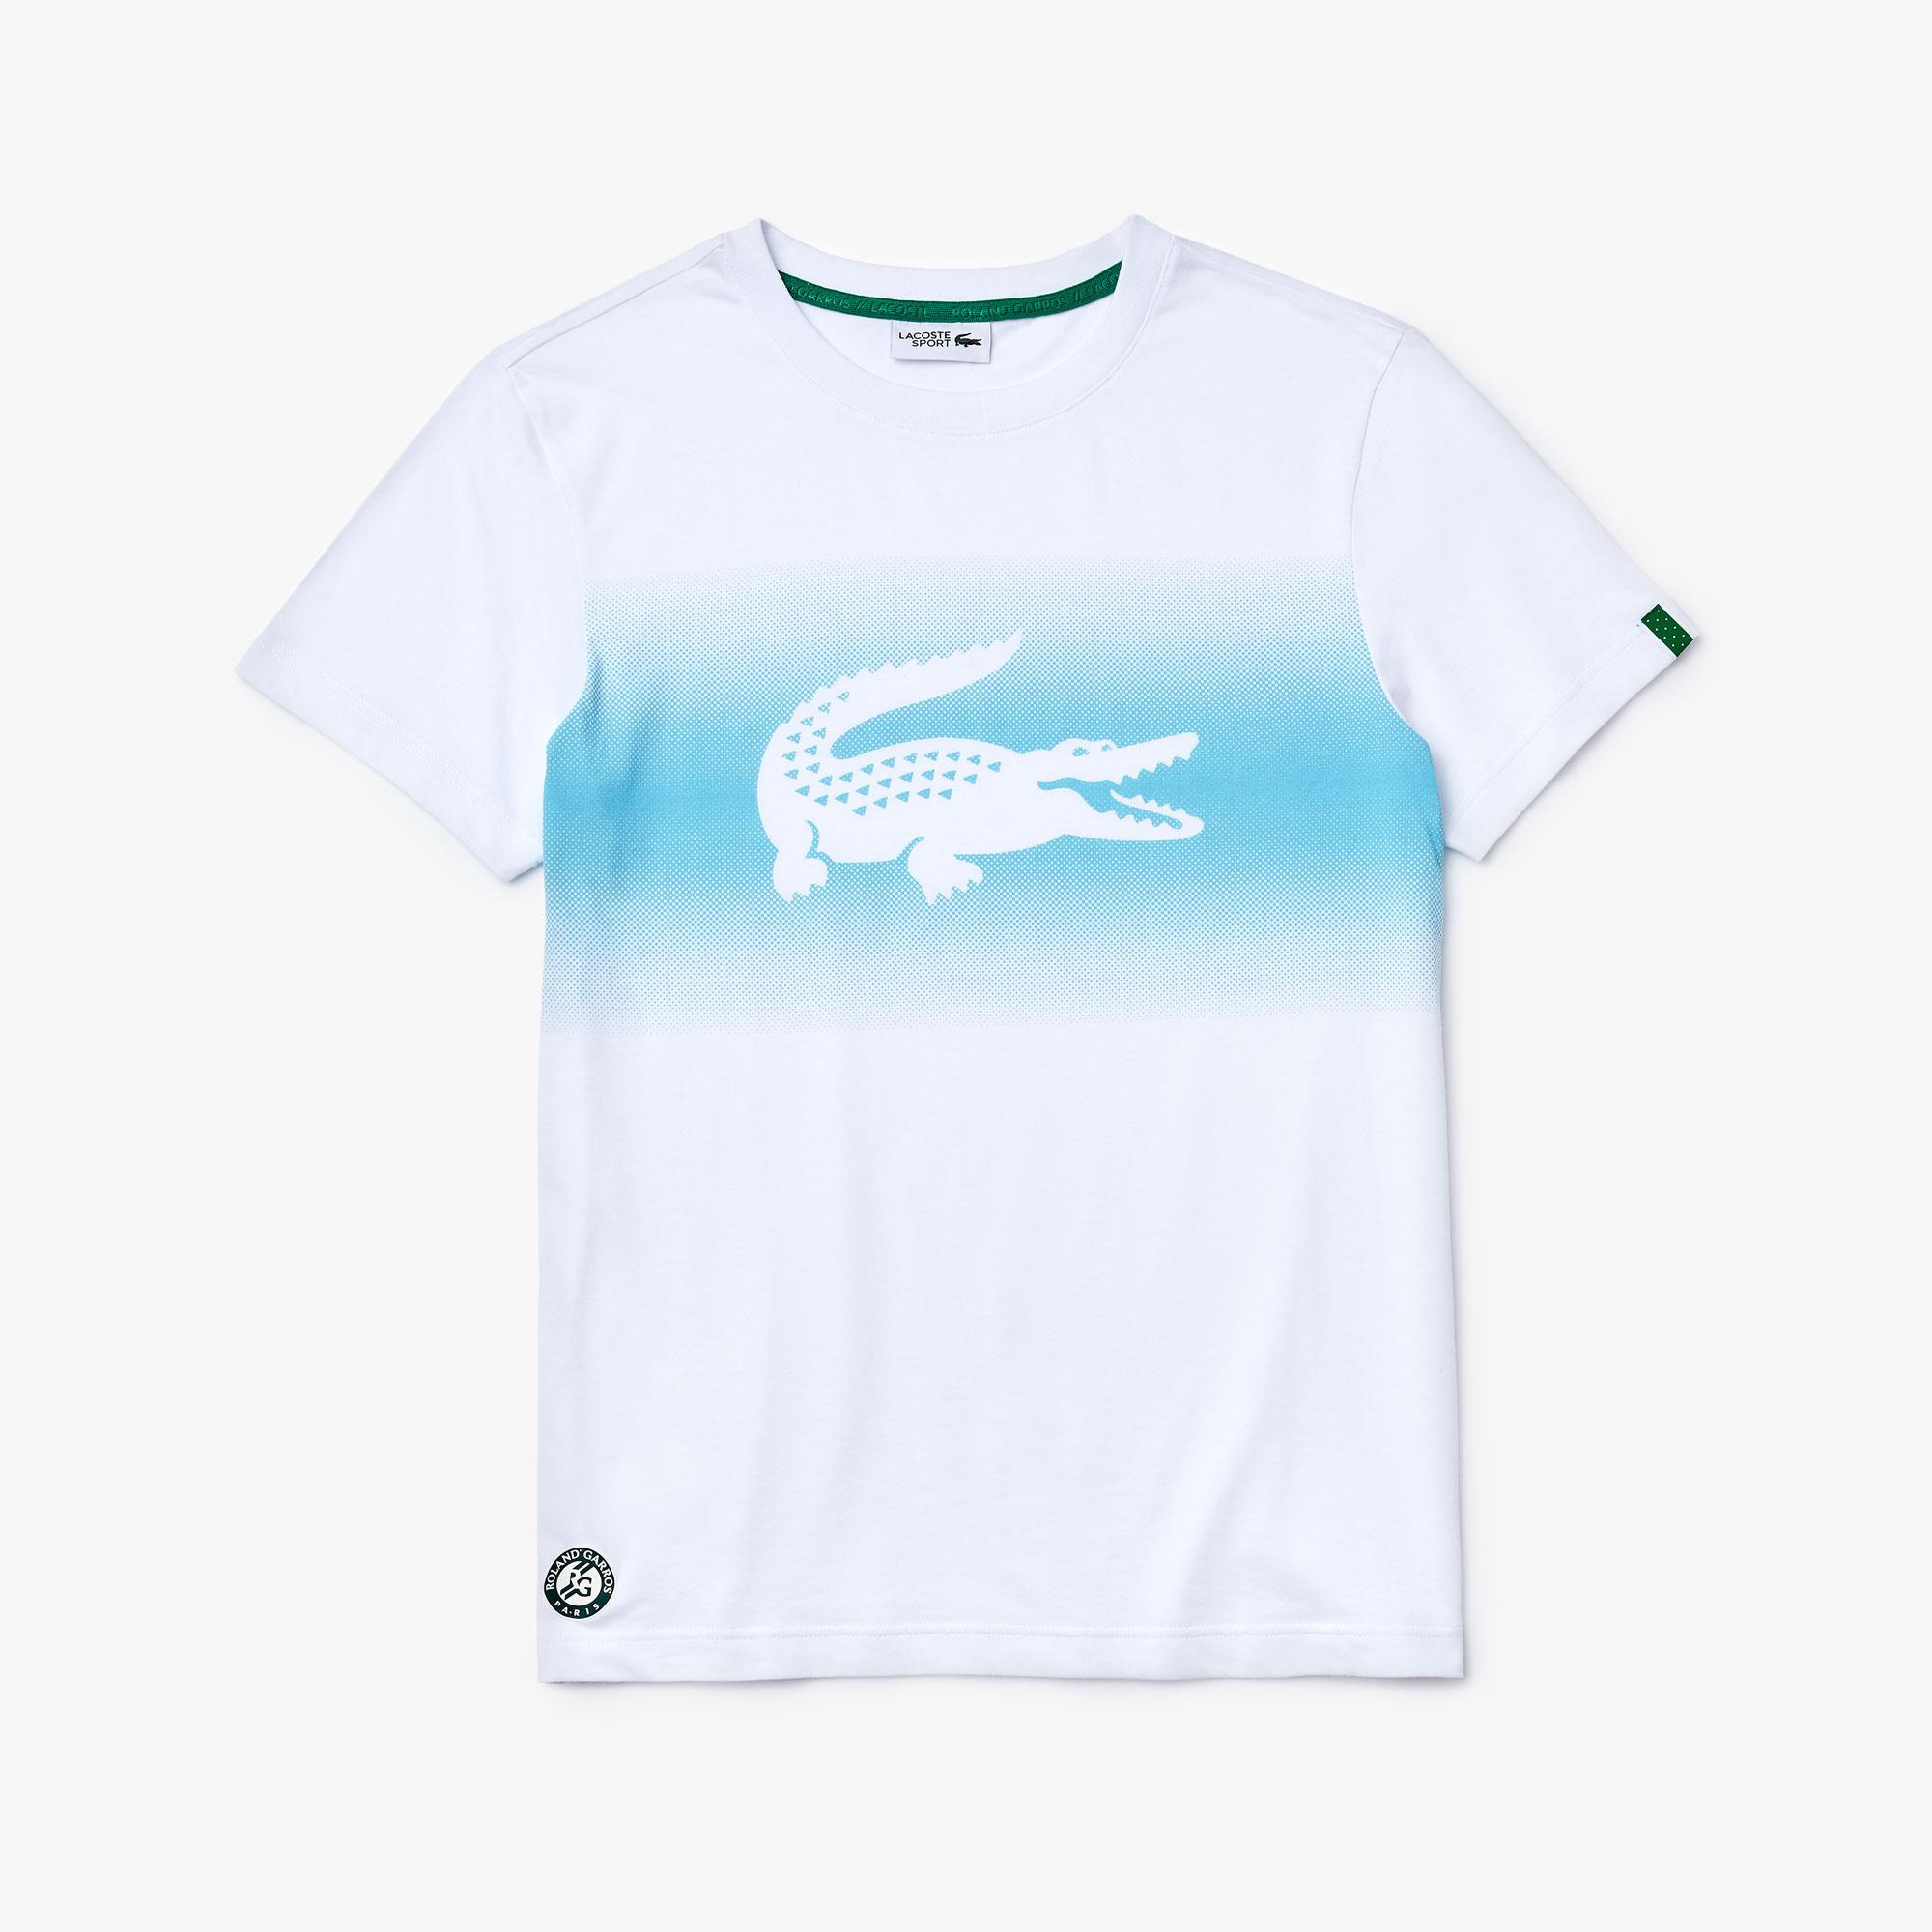 Lacoste Men's Sport Roland Garros Croc Print T-Shirt TH3616 | Lacoste